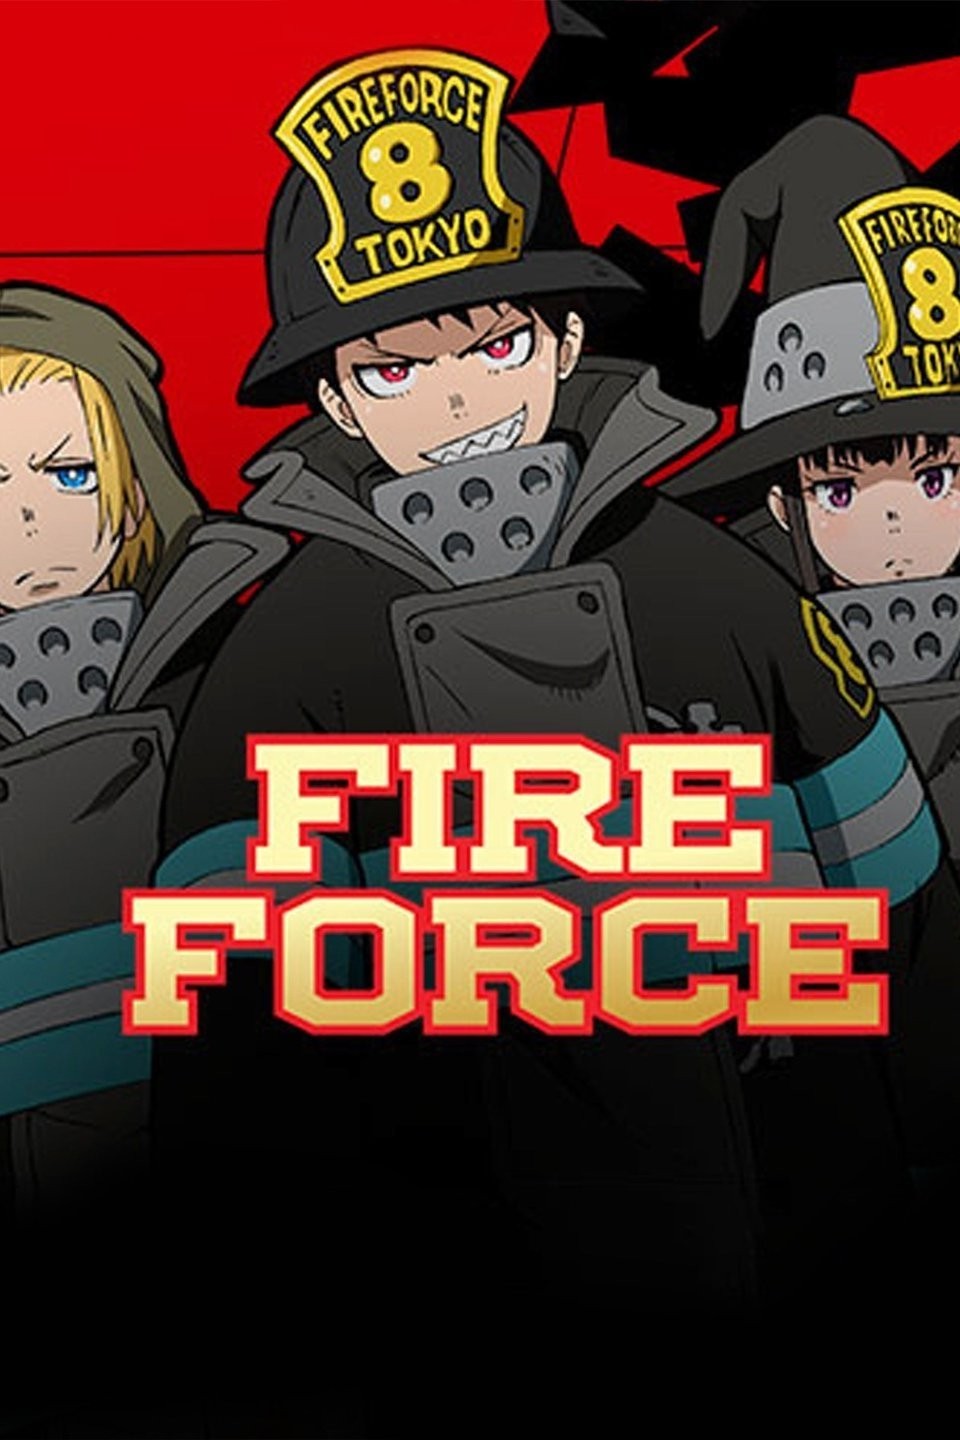 Fire Force Temporada 1 episódio 1 dublado, Fire Force - Temporada1 episódio  1 (dublado) #Fire_Force, By Memes Do Drogadinho